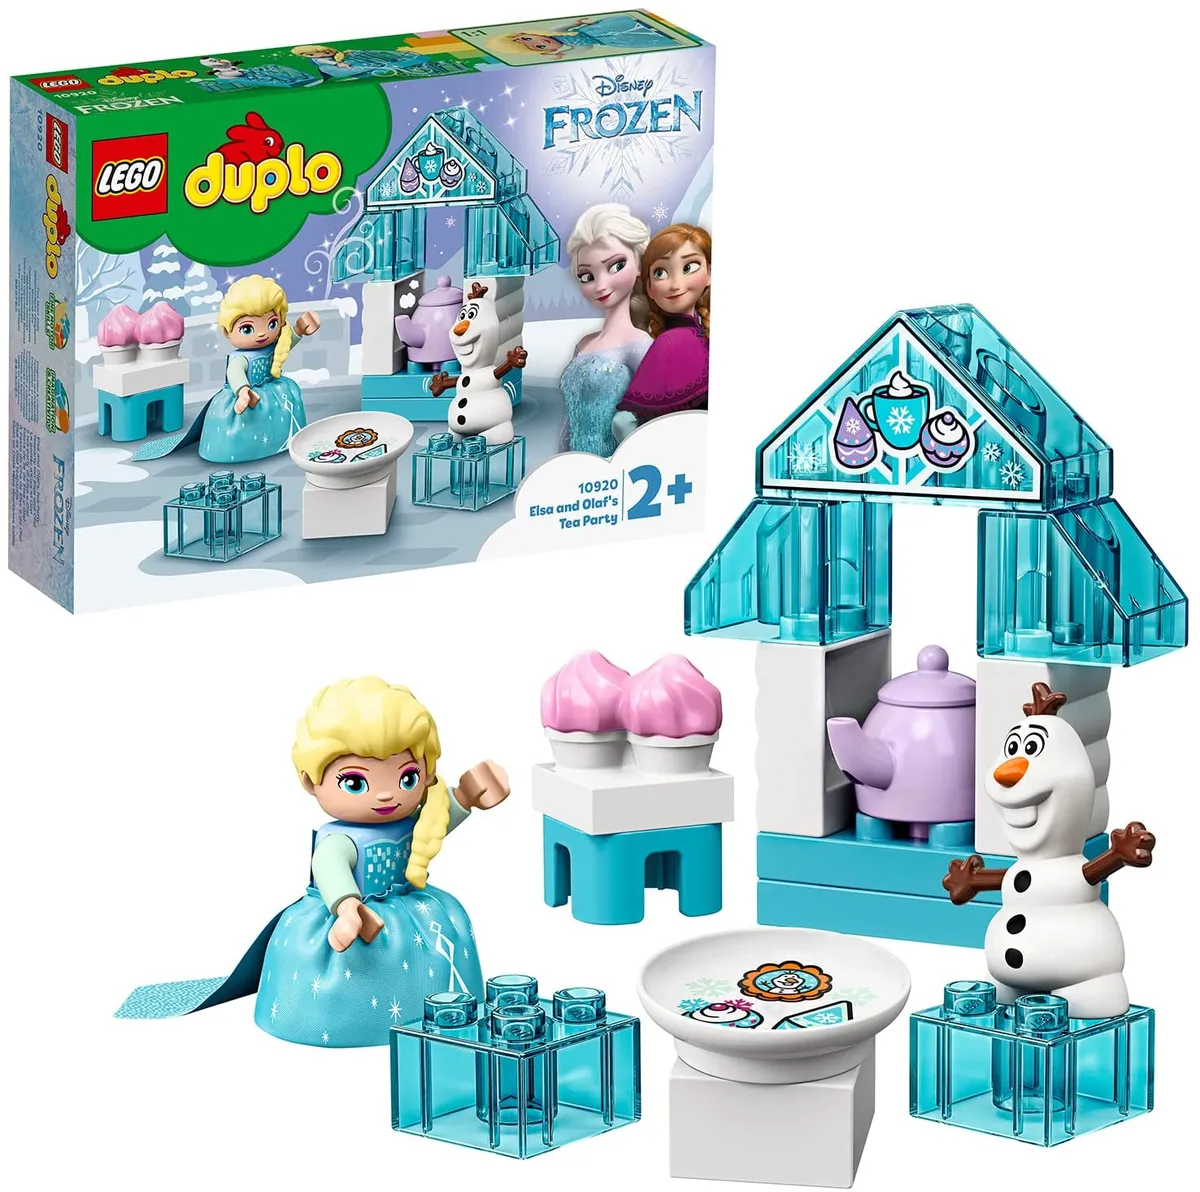 Lego Duplo Sets Frozen